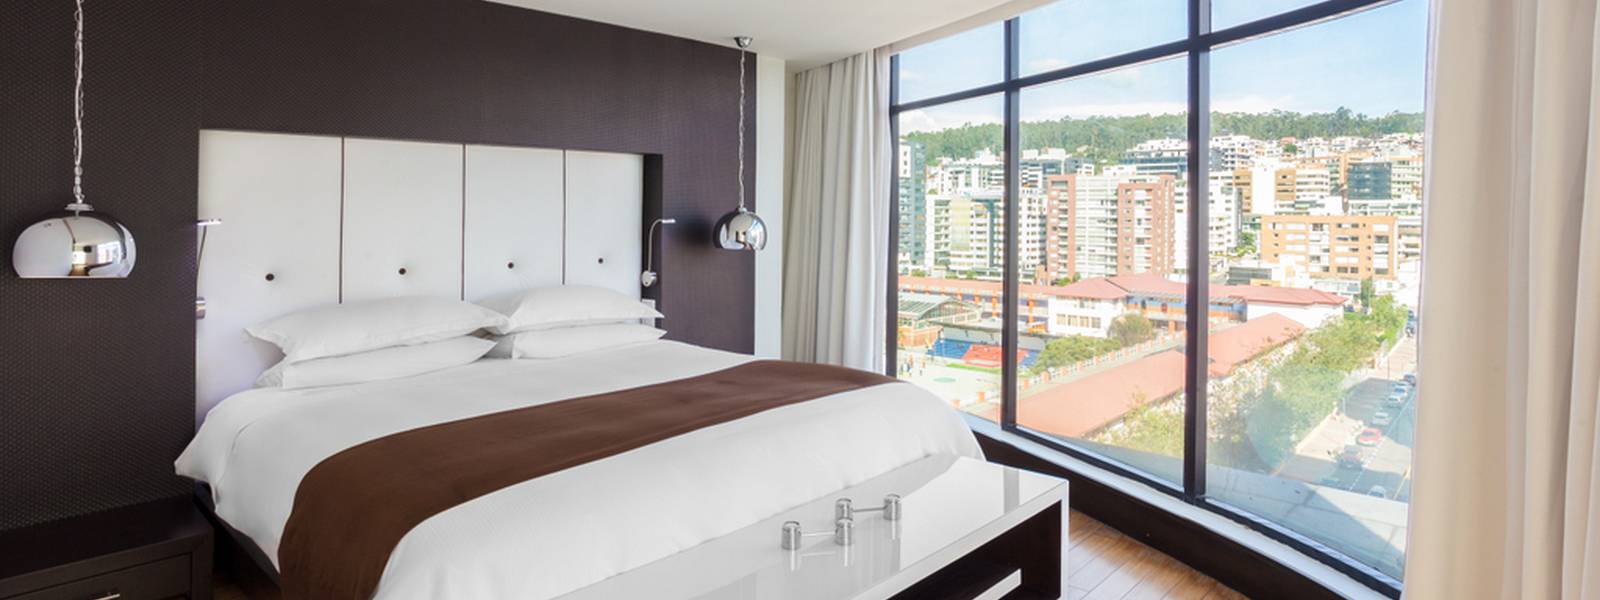 Chambre - Hôtel Leparc - Quito